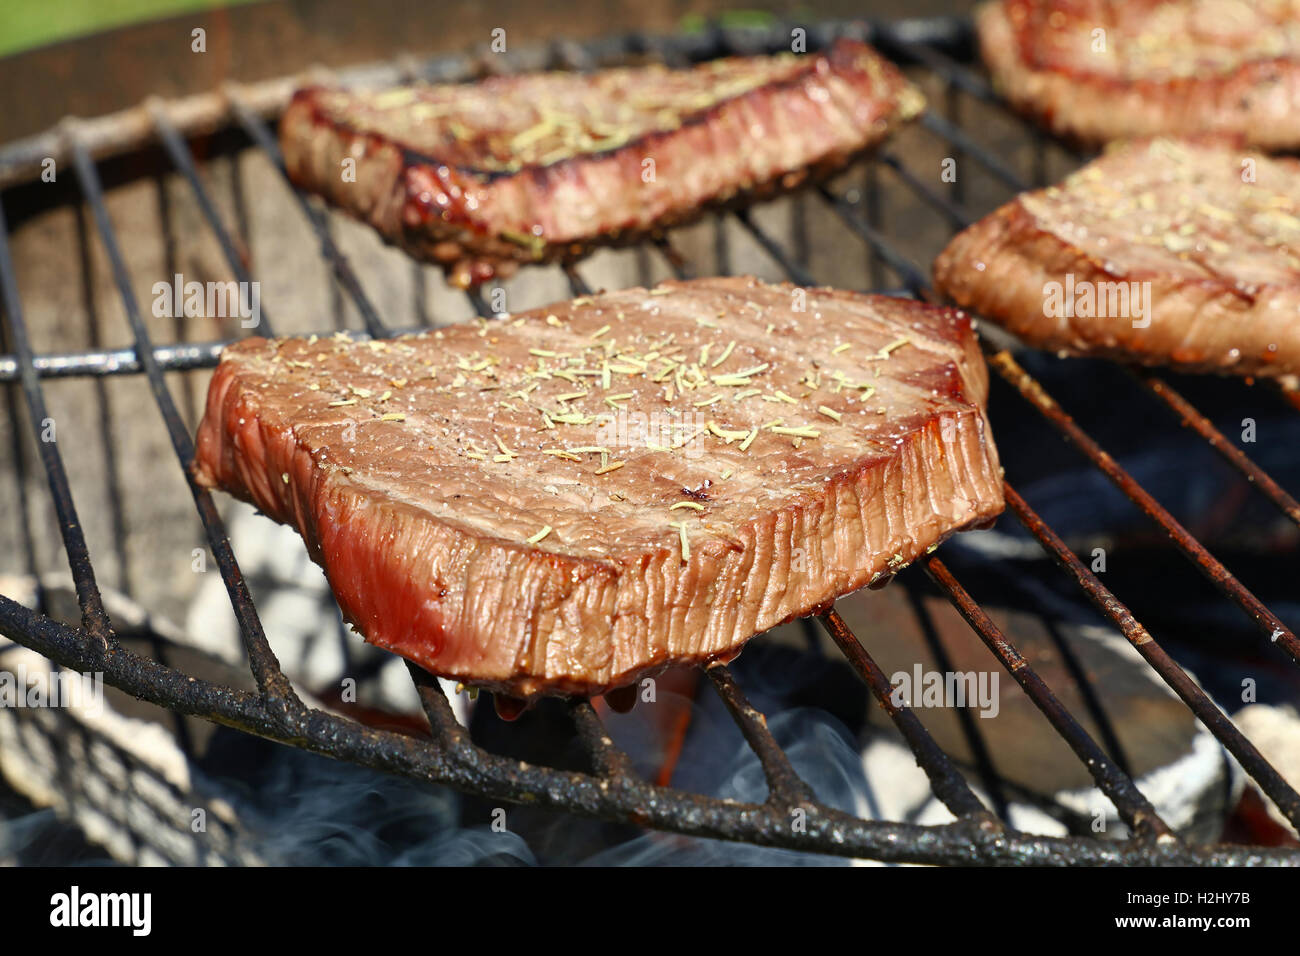 Sizzling grigliate di carni bovine bistecche grigliate con spezie preparato di cottura sulla griglia per il barbecue, close up Foto Stock